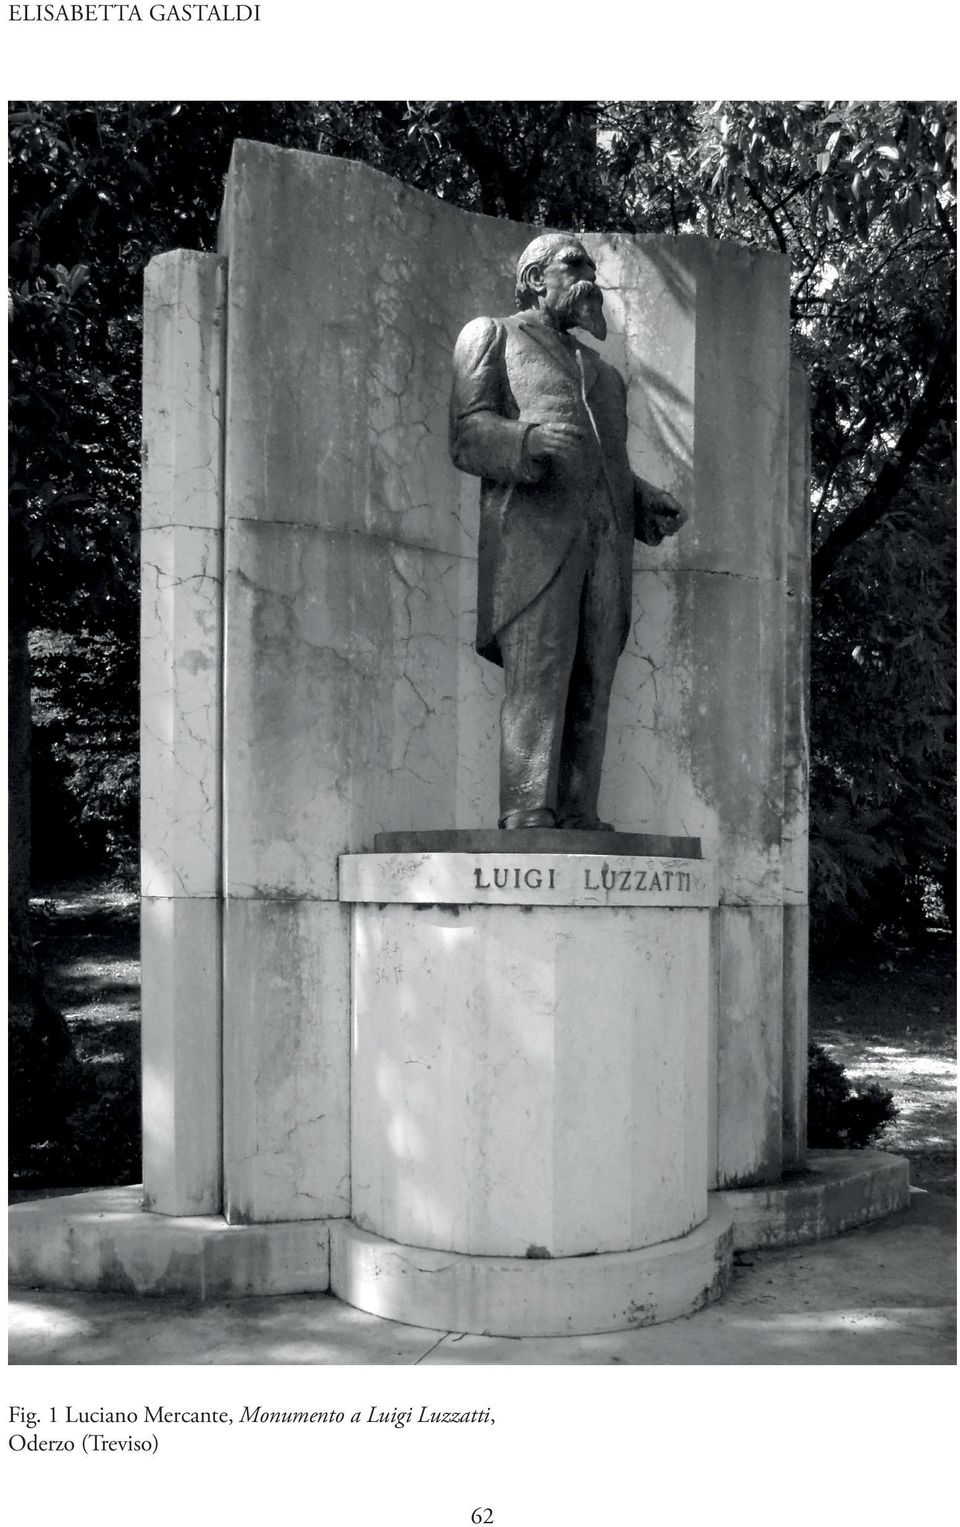 Monumento a Luigi